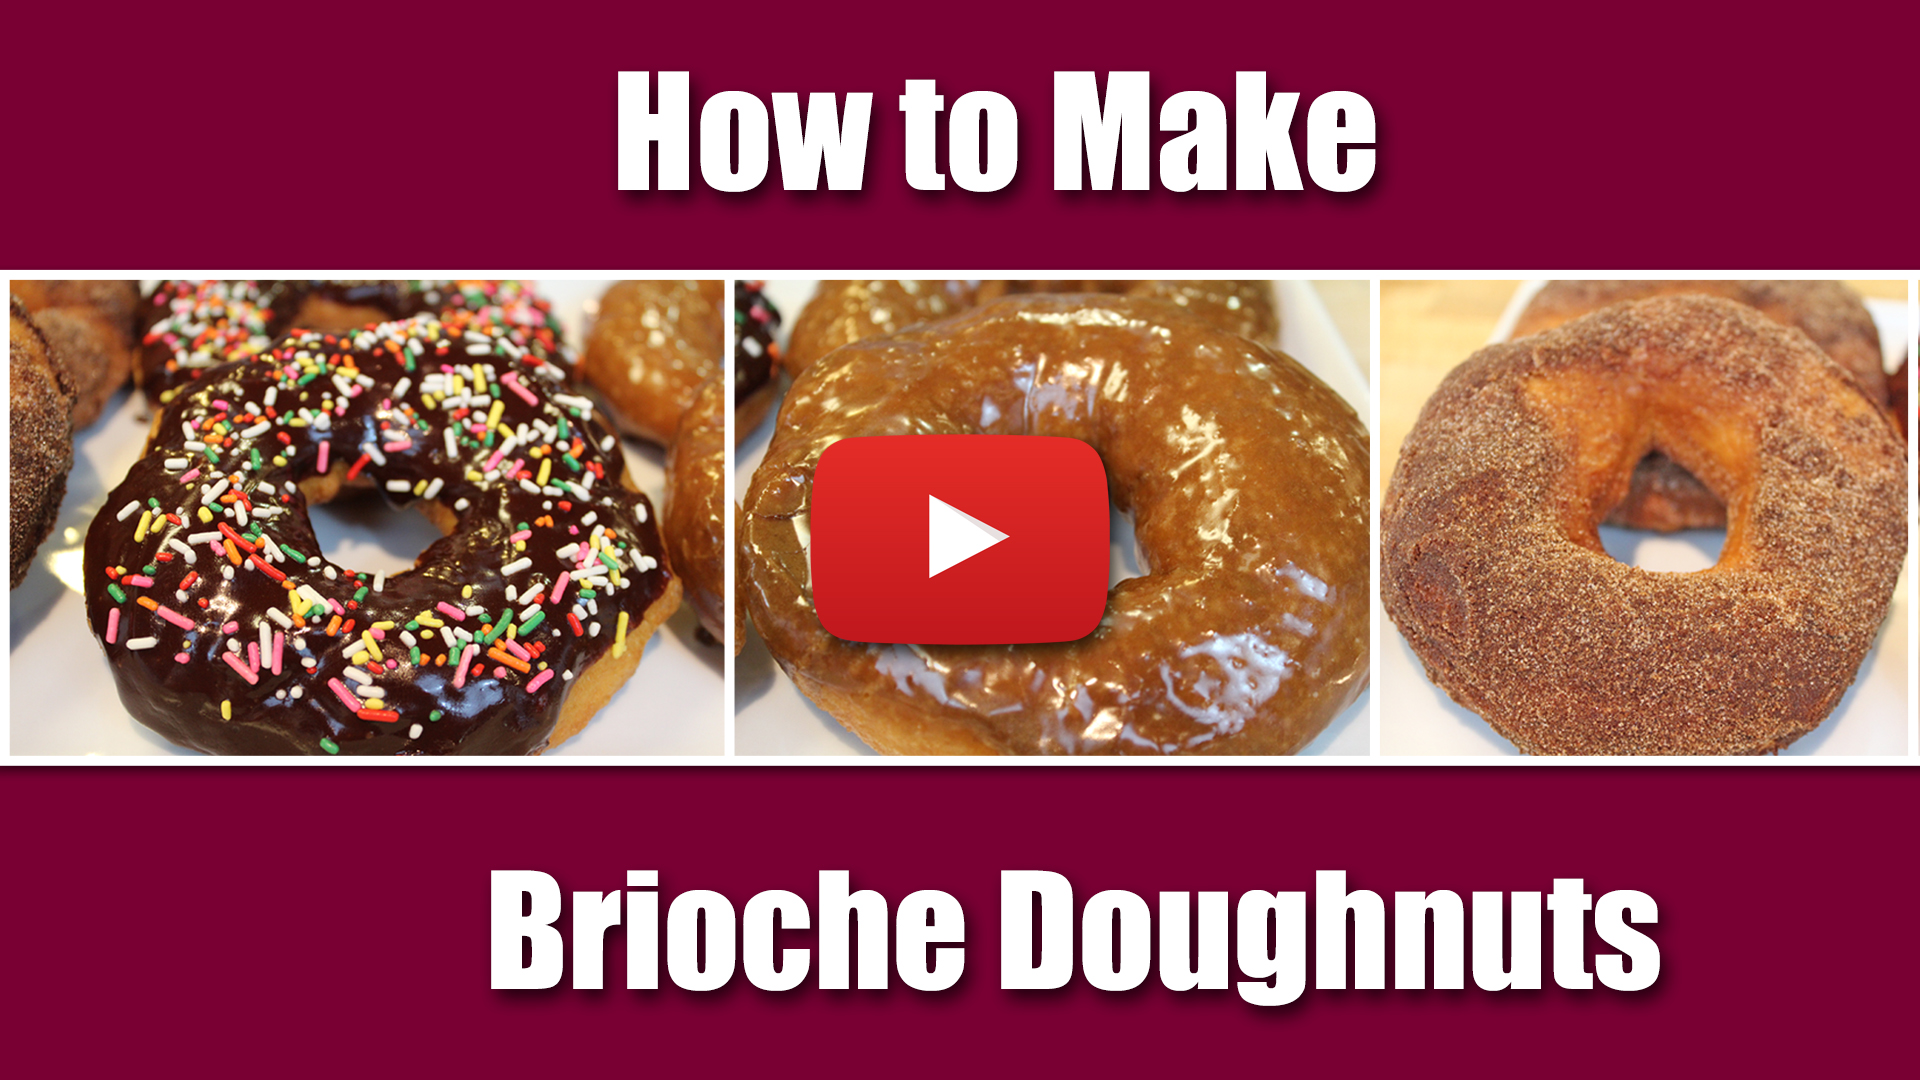 How to Make Brioche Doughnuts Video